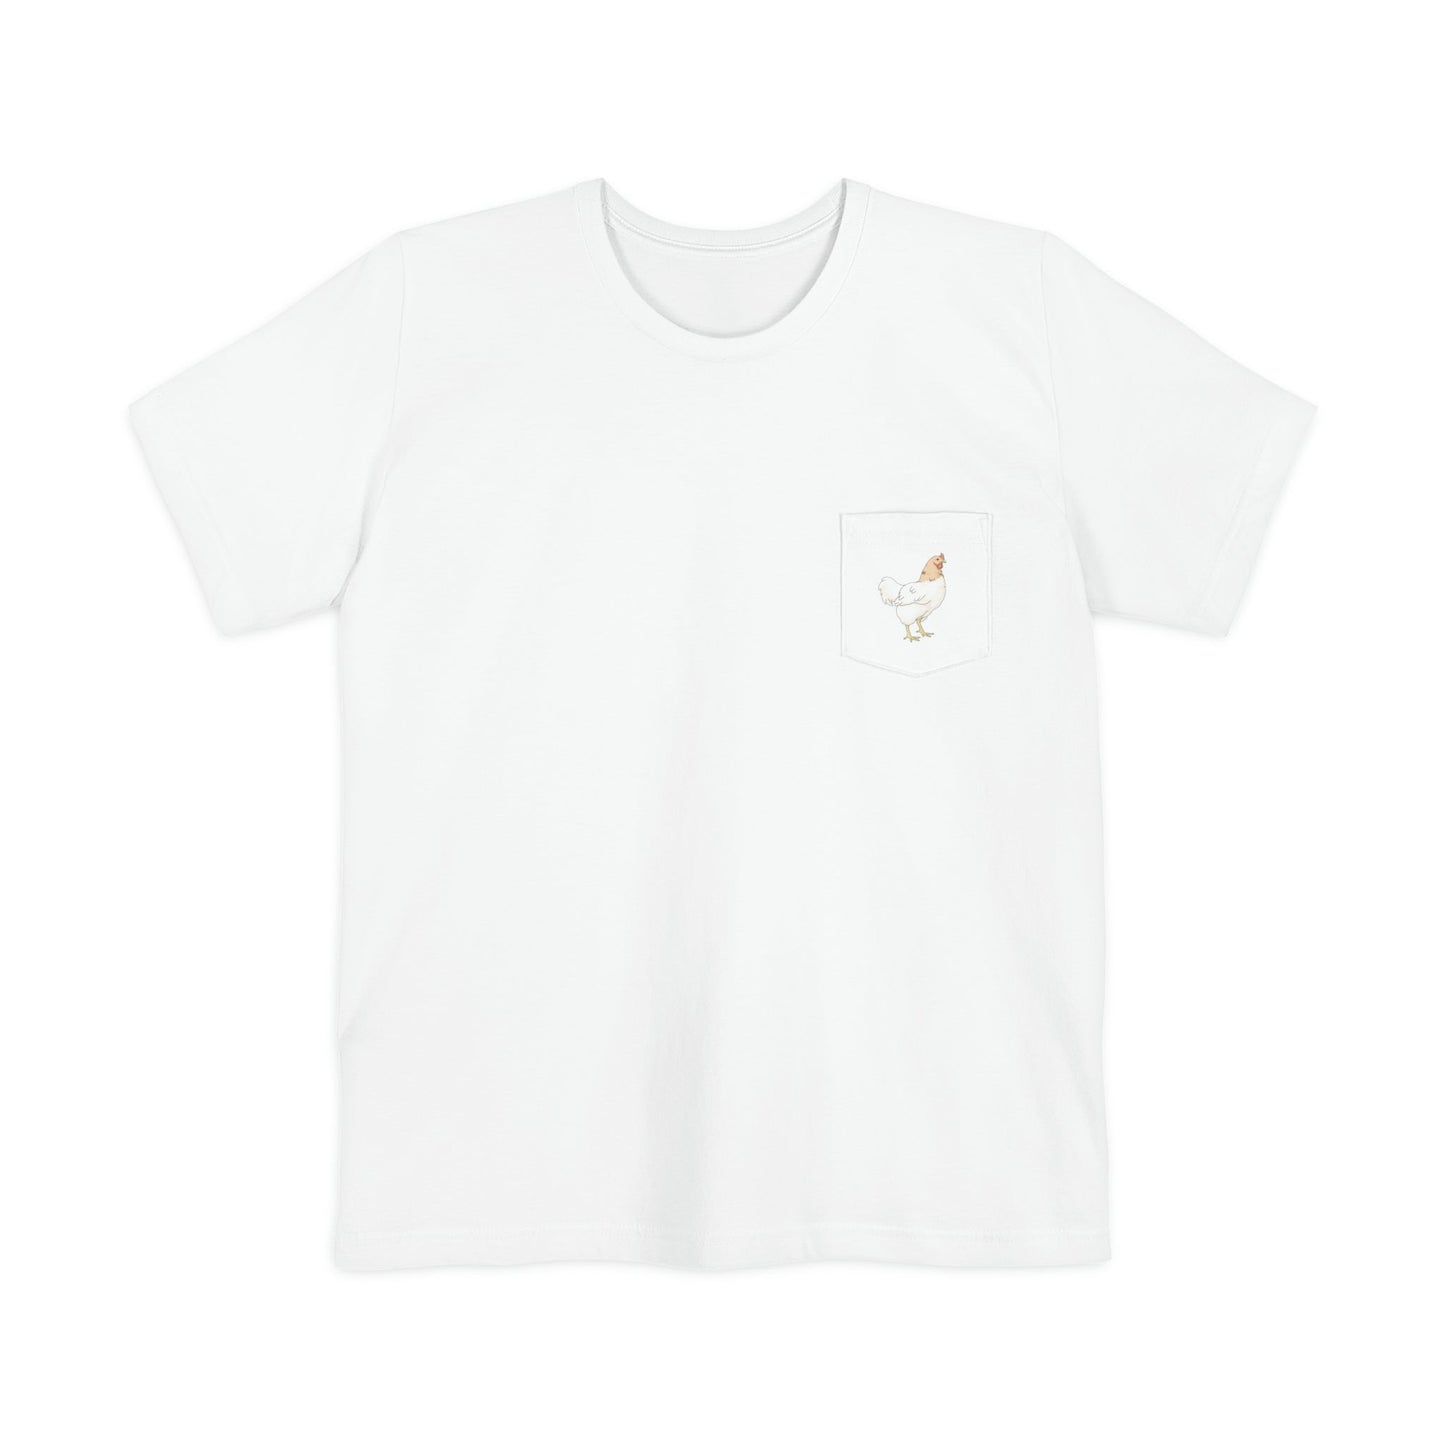 Chicken | Pocket T-shirt - Detezi Designs-18276334991687656083